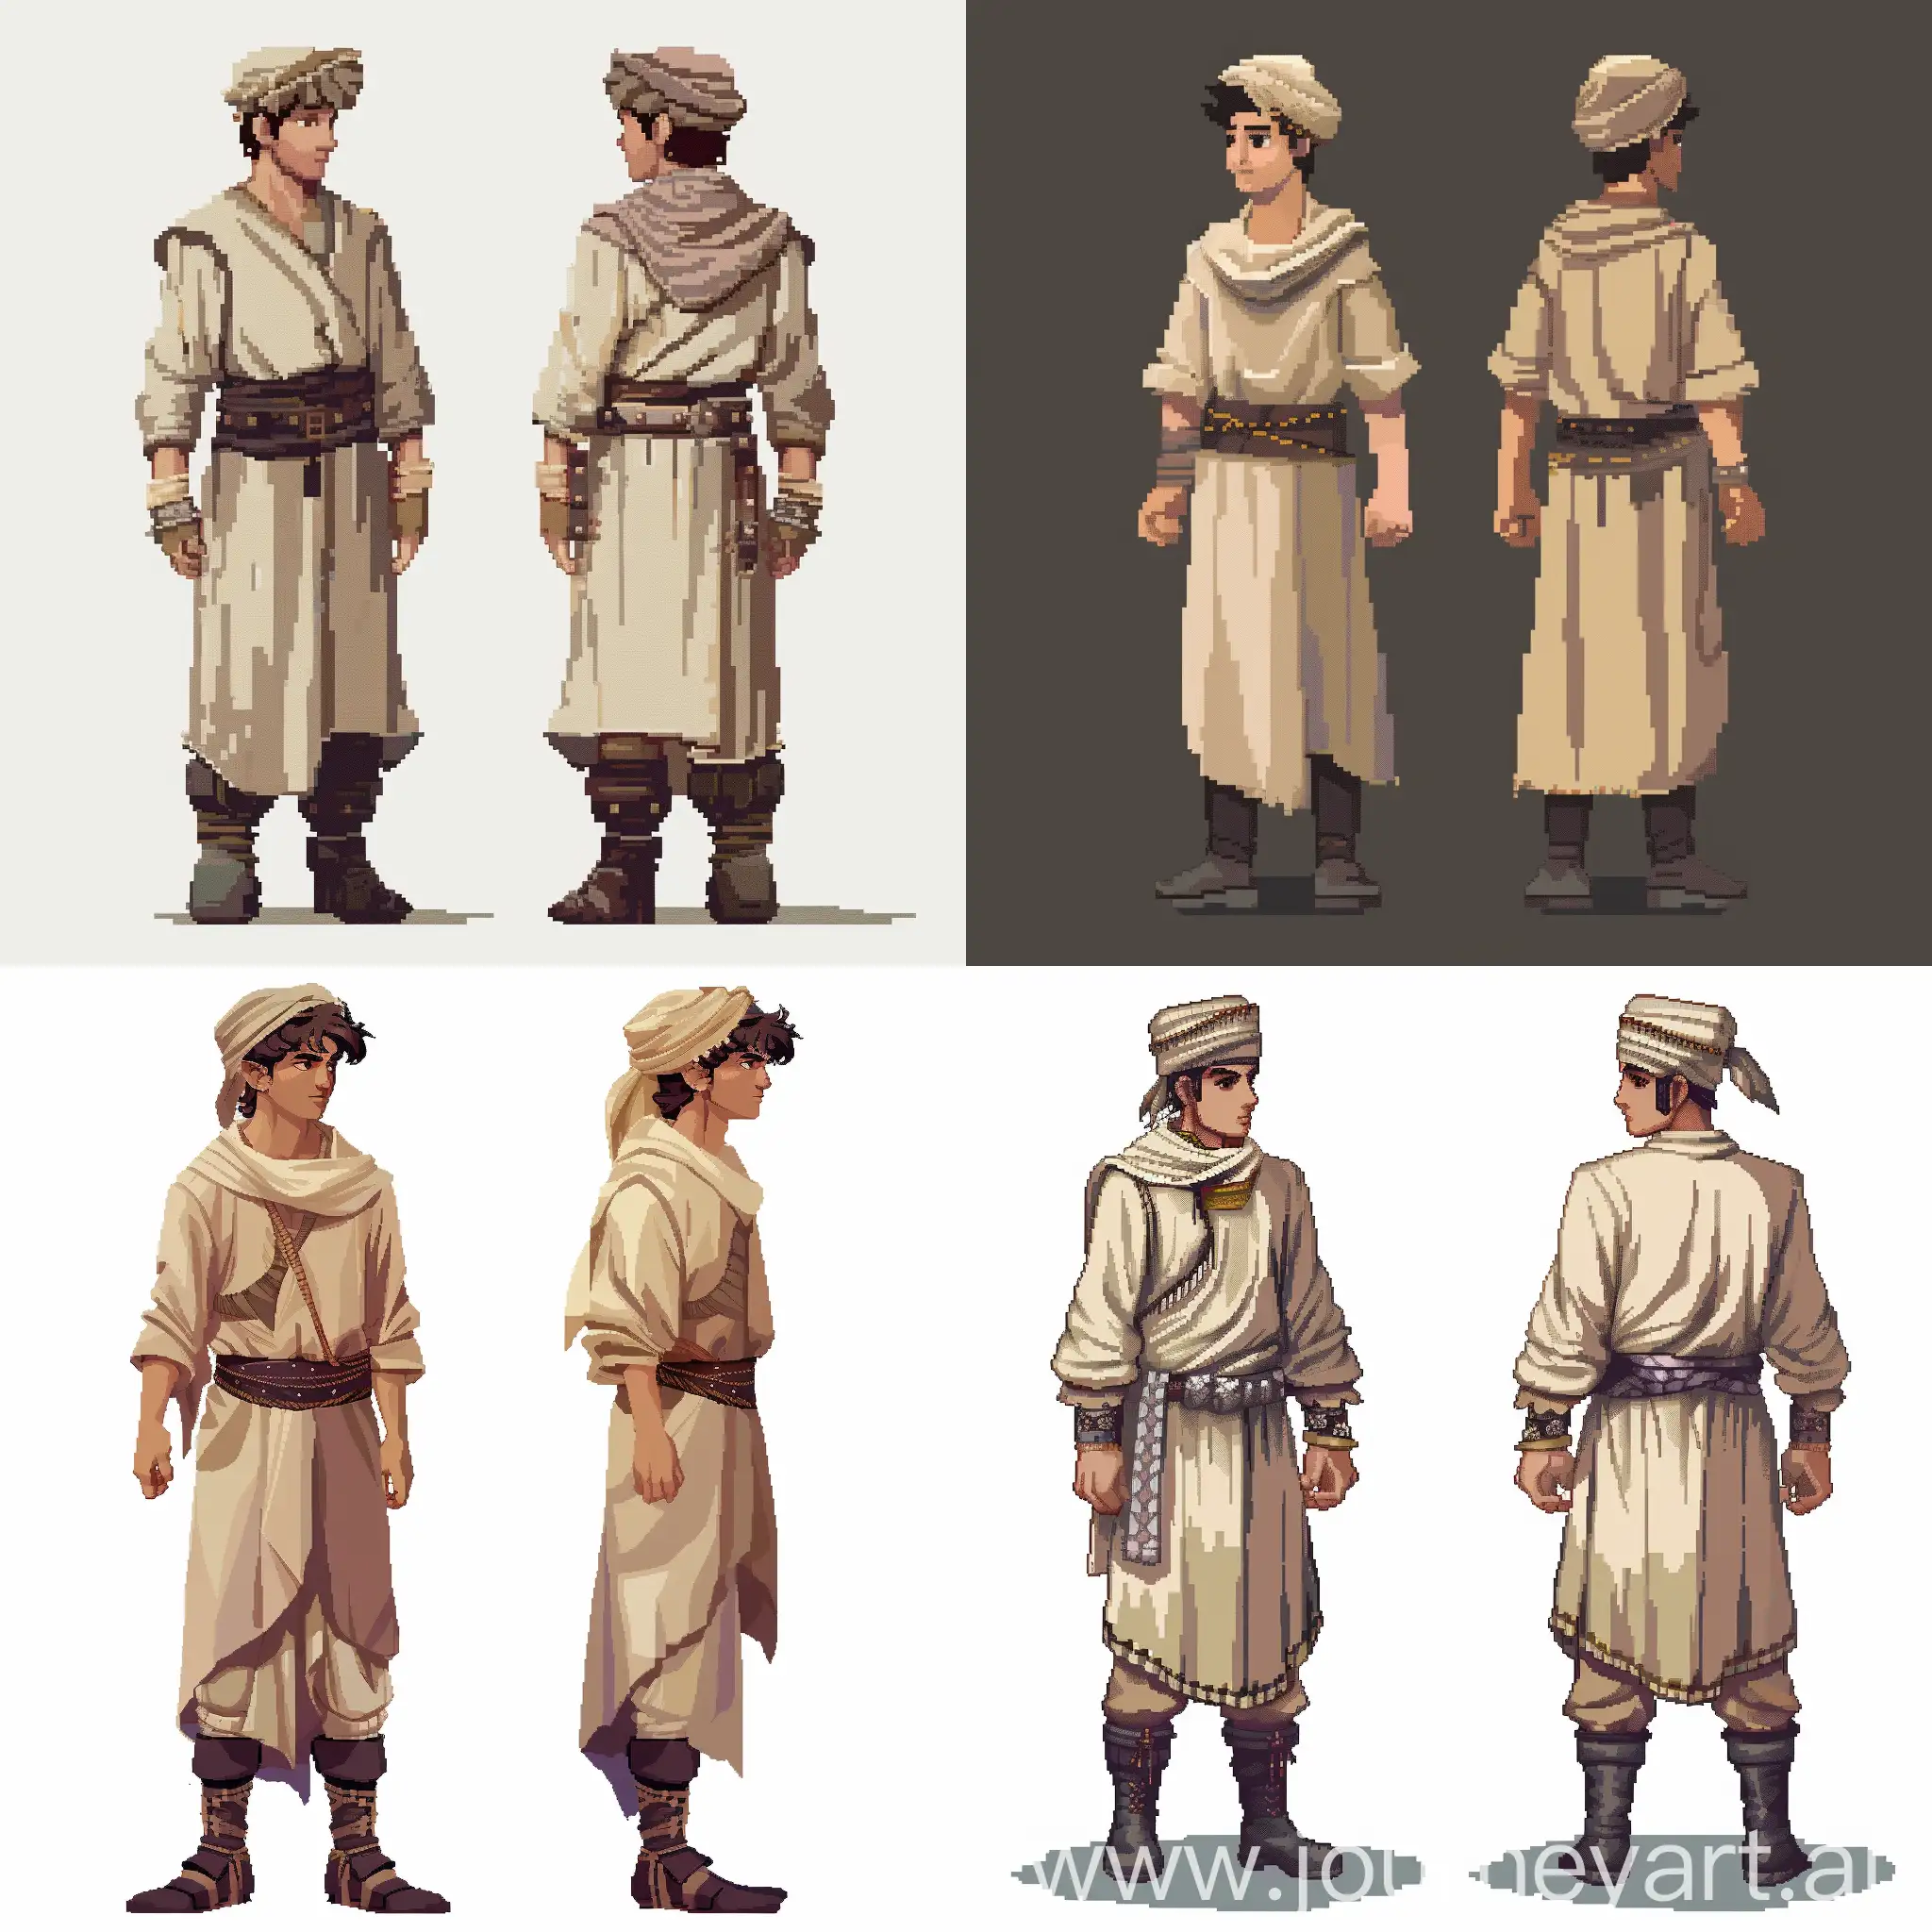 Персонаж для пиксельной 2d игры с видом сбоку и спереди. Он одет в светлый кафтан, темные сапоги, у него есть тканевый пояс и шапка